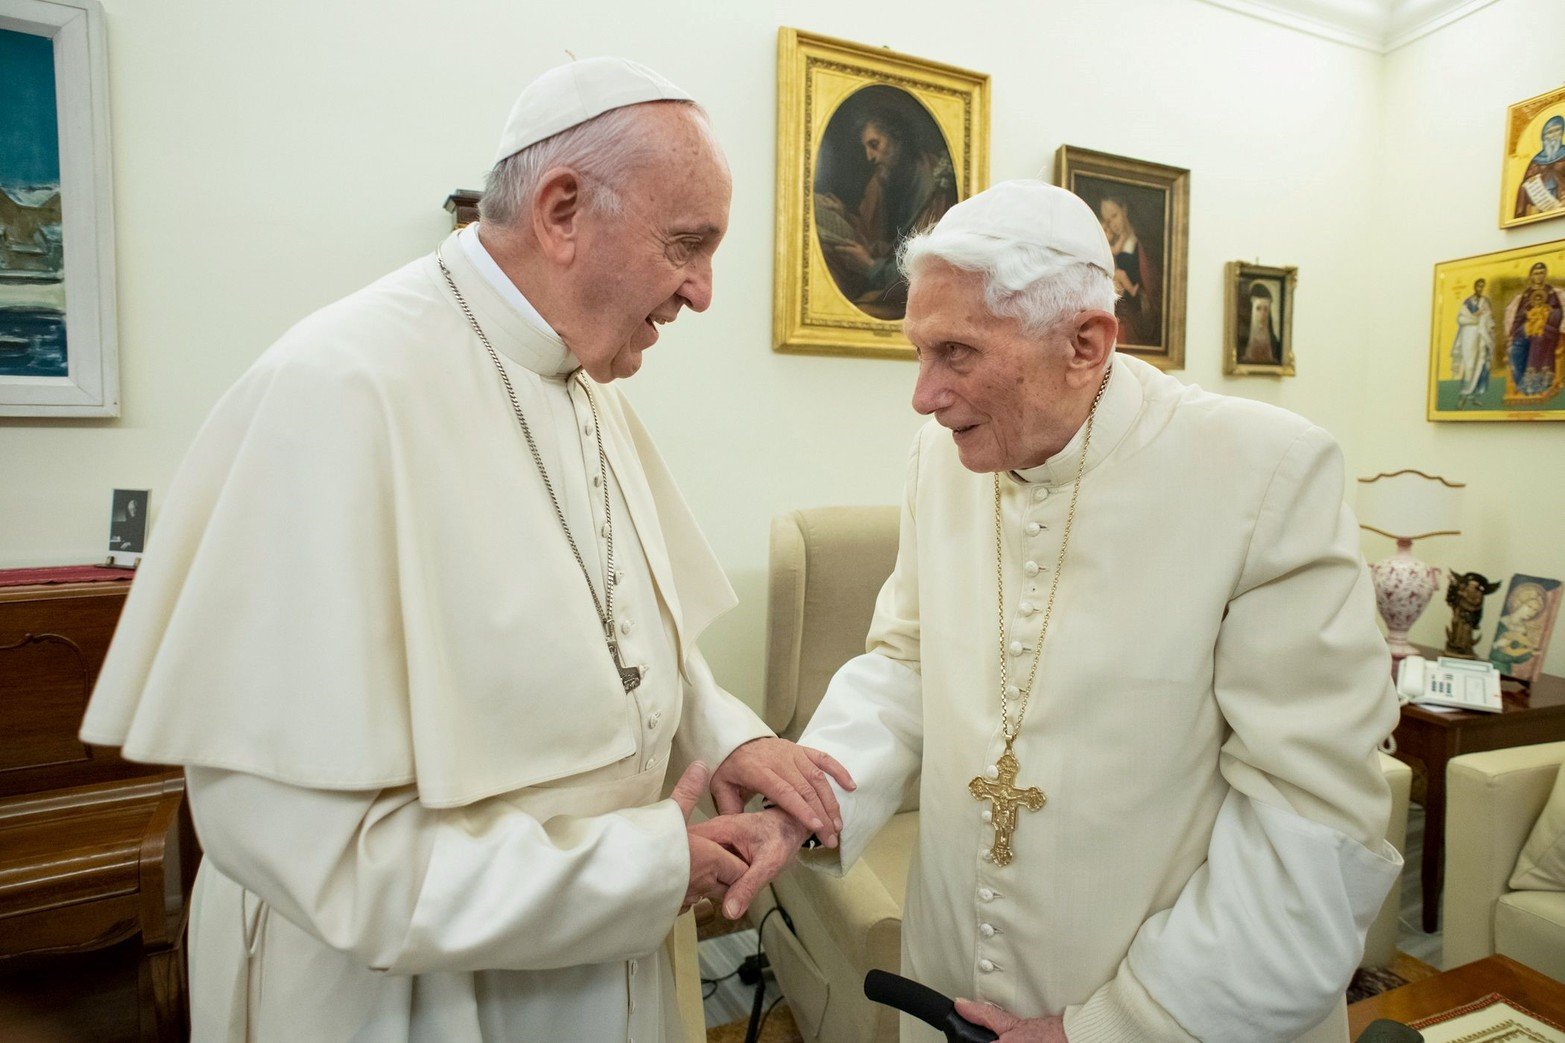 2018. 21 de diciembre, segundo encuentro del Papa Francisco reuniéndose con el Papa Benedicto XVI en el Vaticano. 